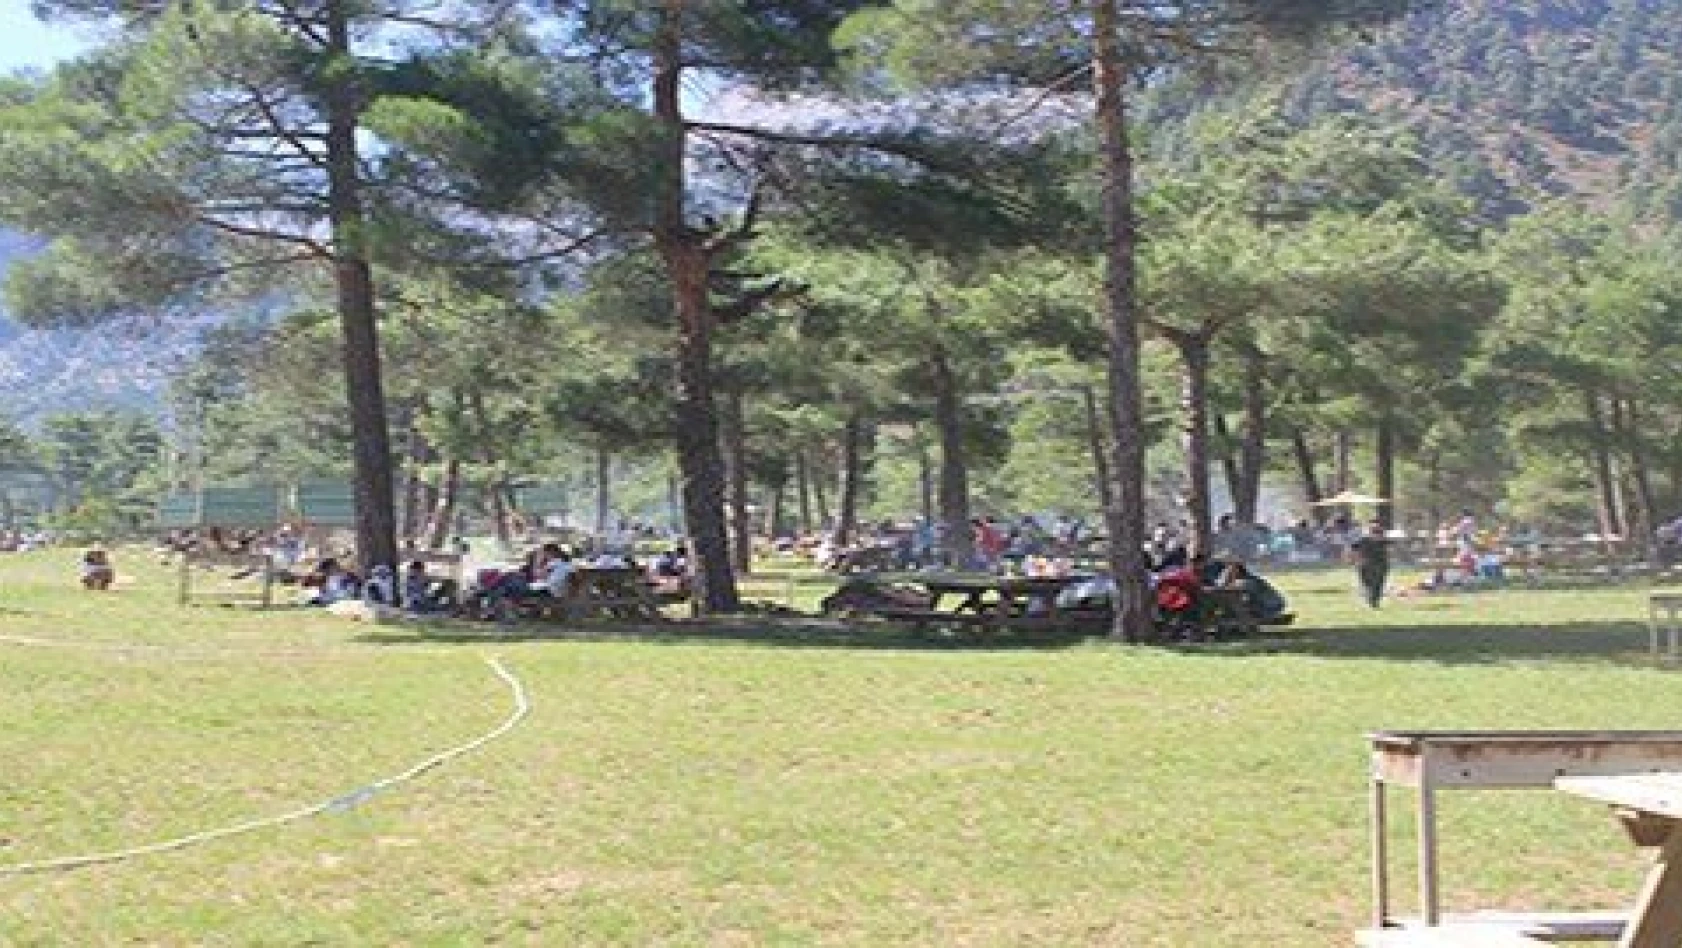 Yahyalı Milli Parklar ve Doğa Koruma Kapuzbaşı Piknik Alanı'na büyük ilgi